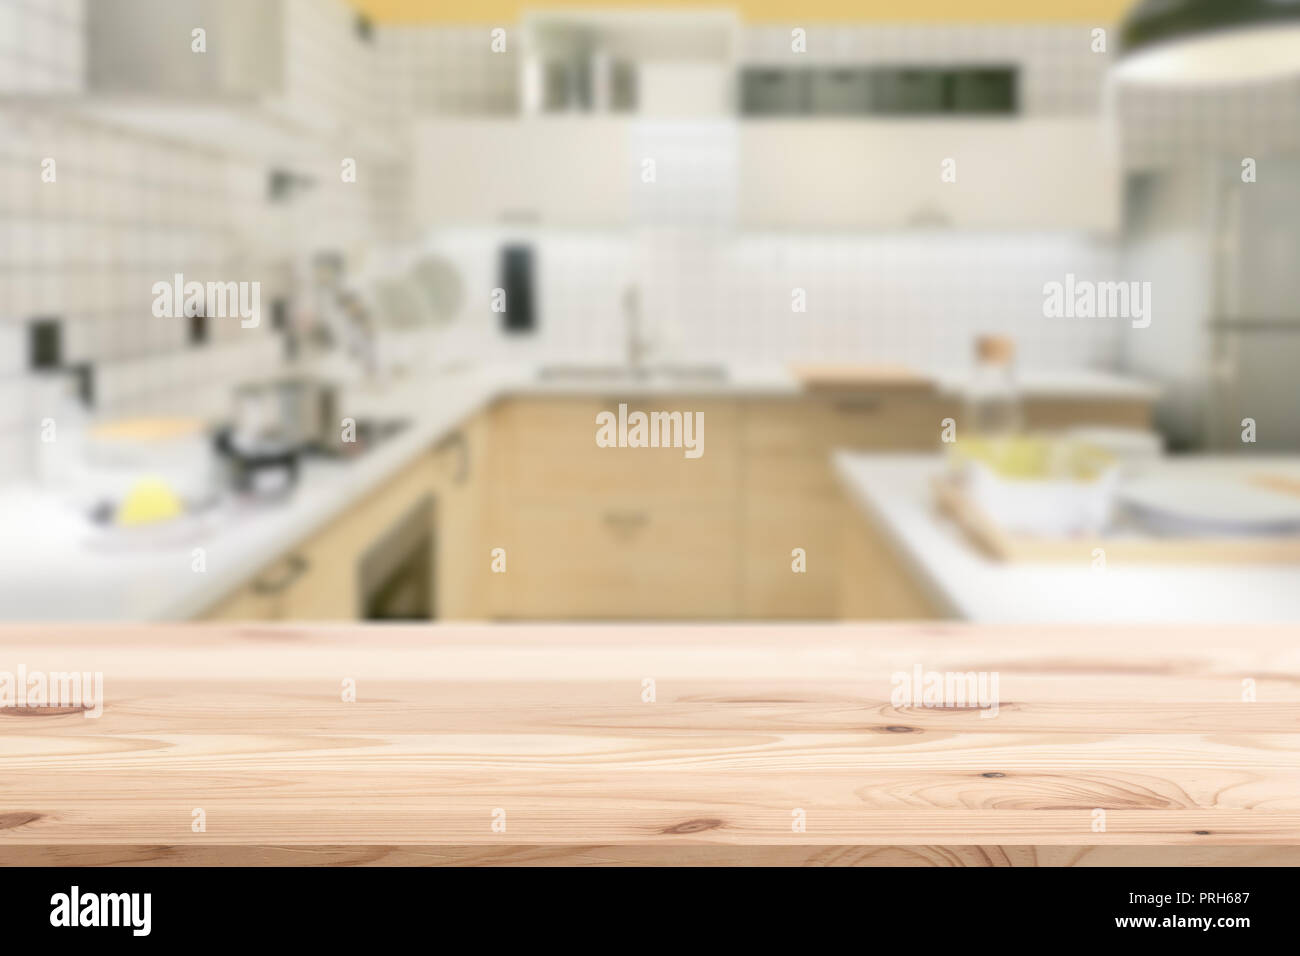 Holztisch Zähler mit blur Küche für Montage Produkte Display Advertising Hintergrund Vorlage. Stockfoto